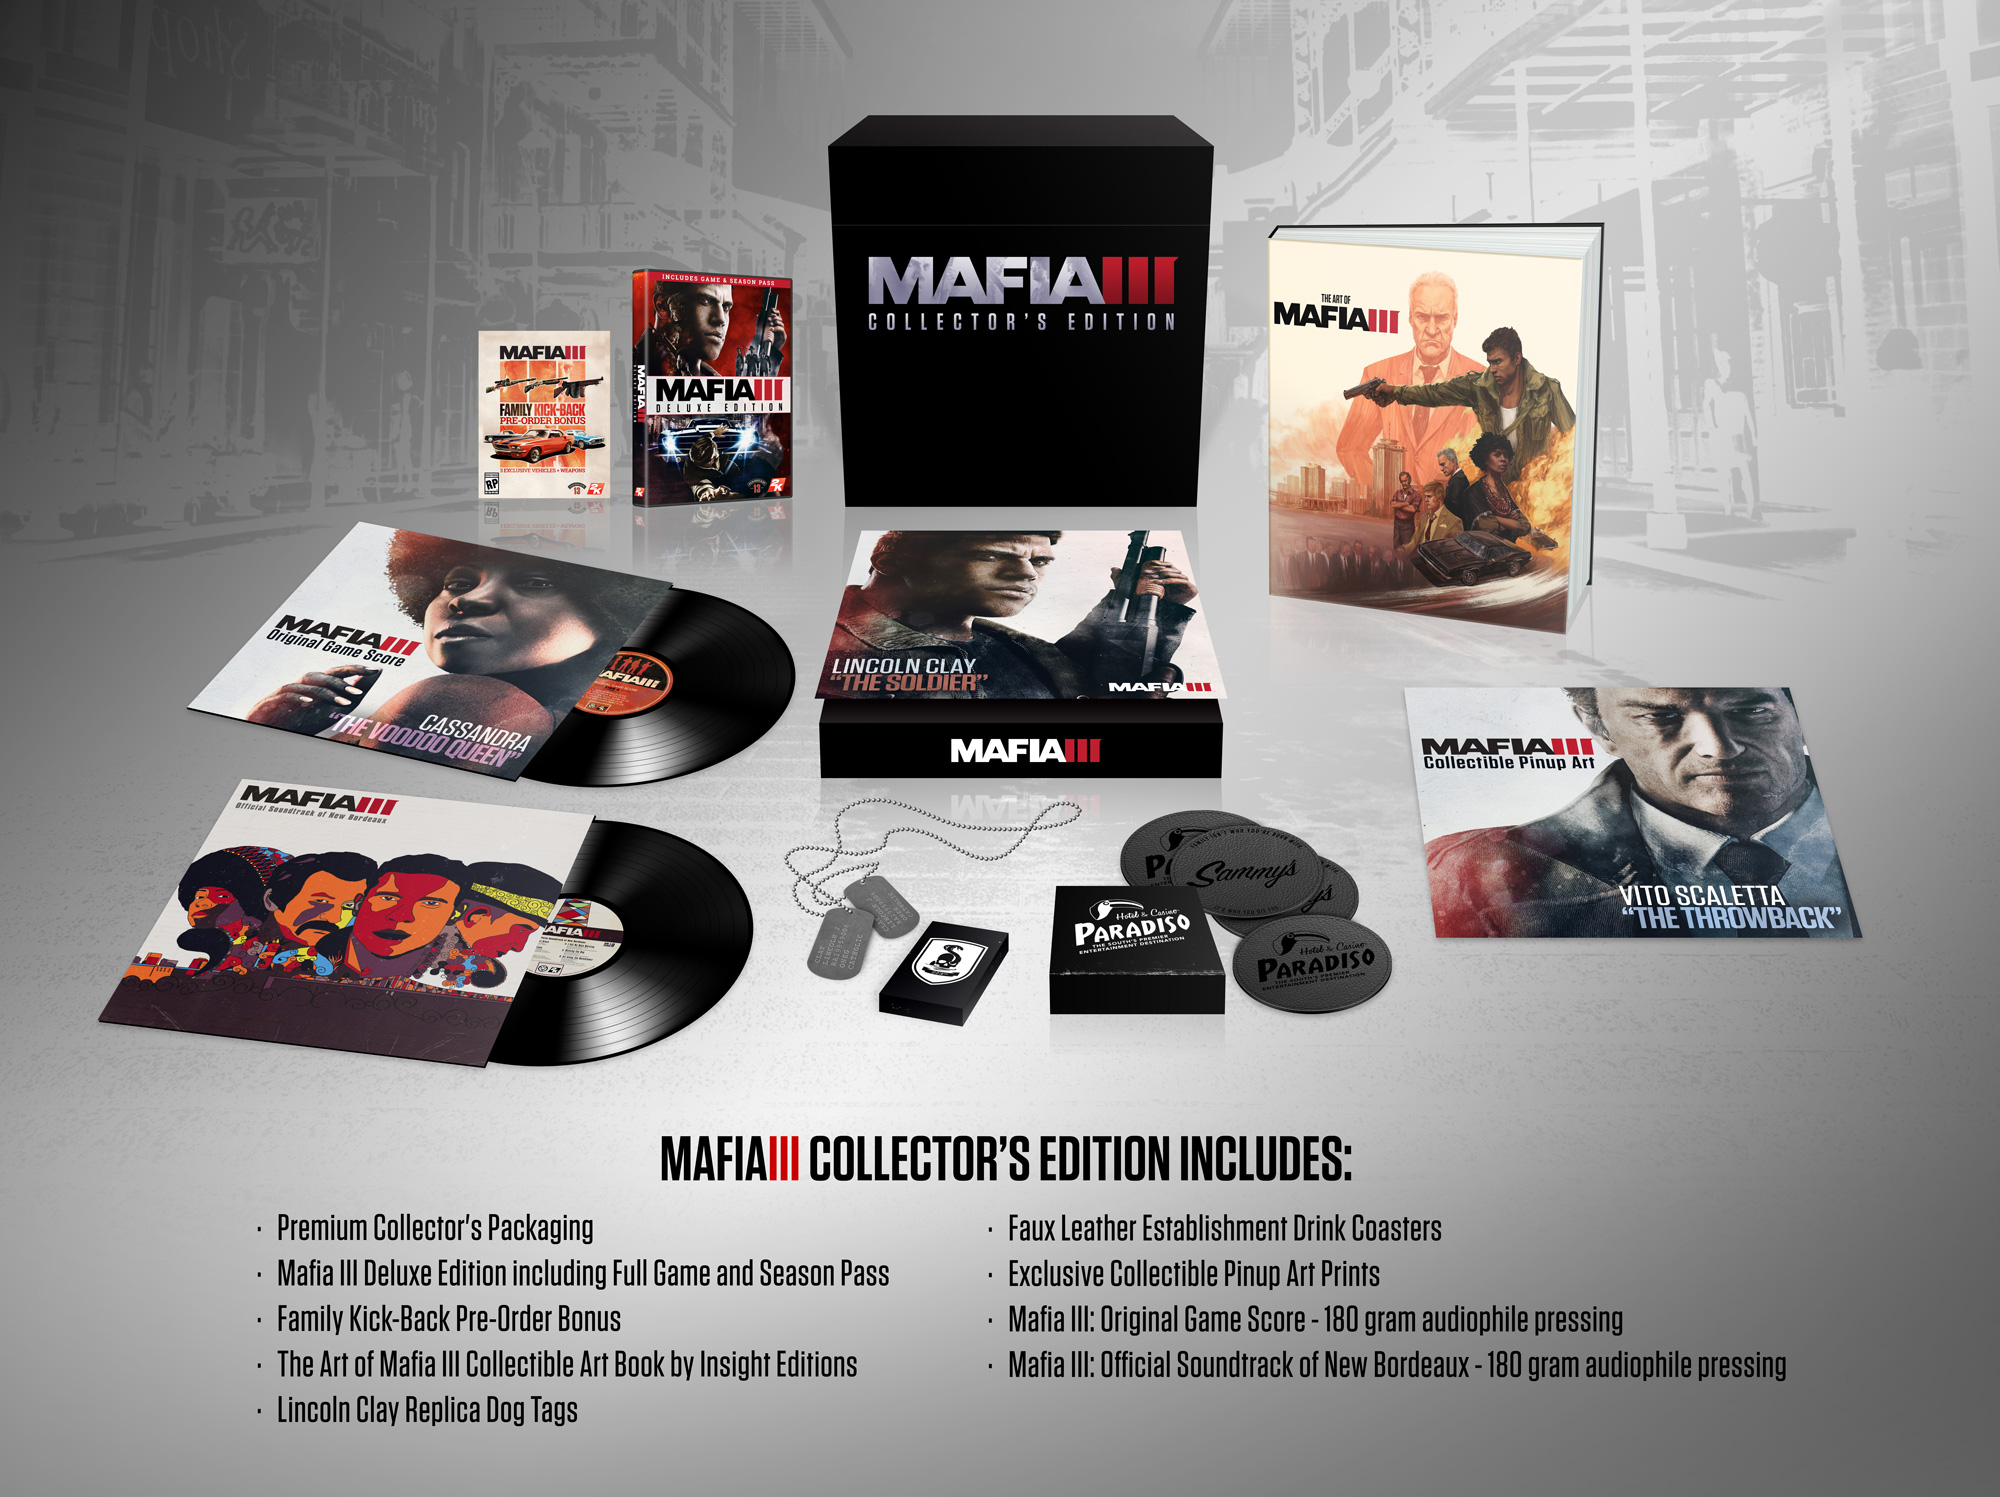 Mafia-iii collector